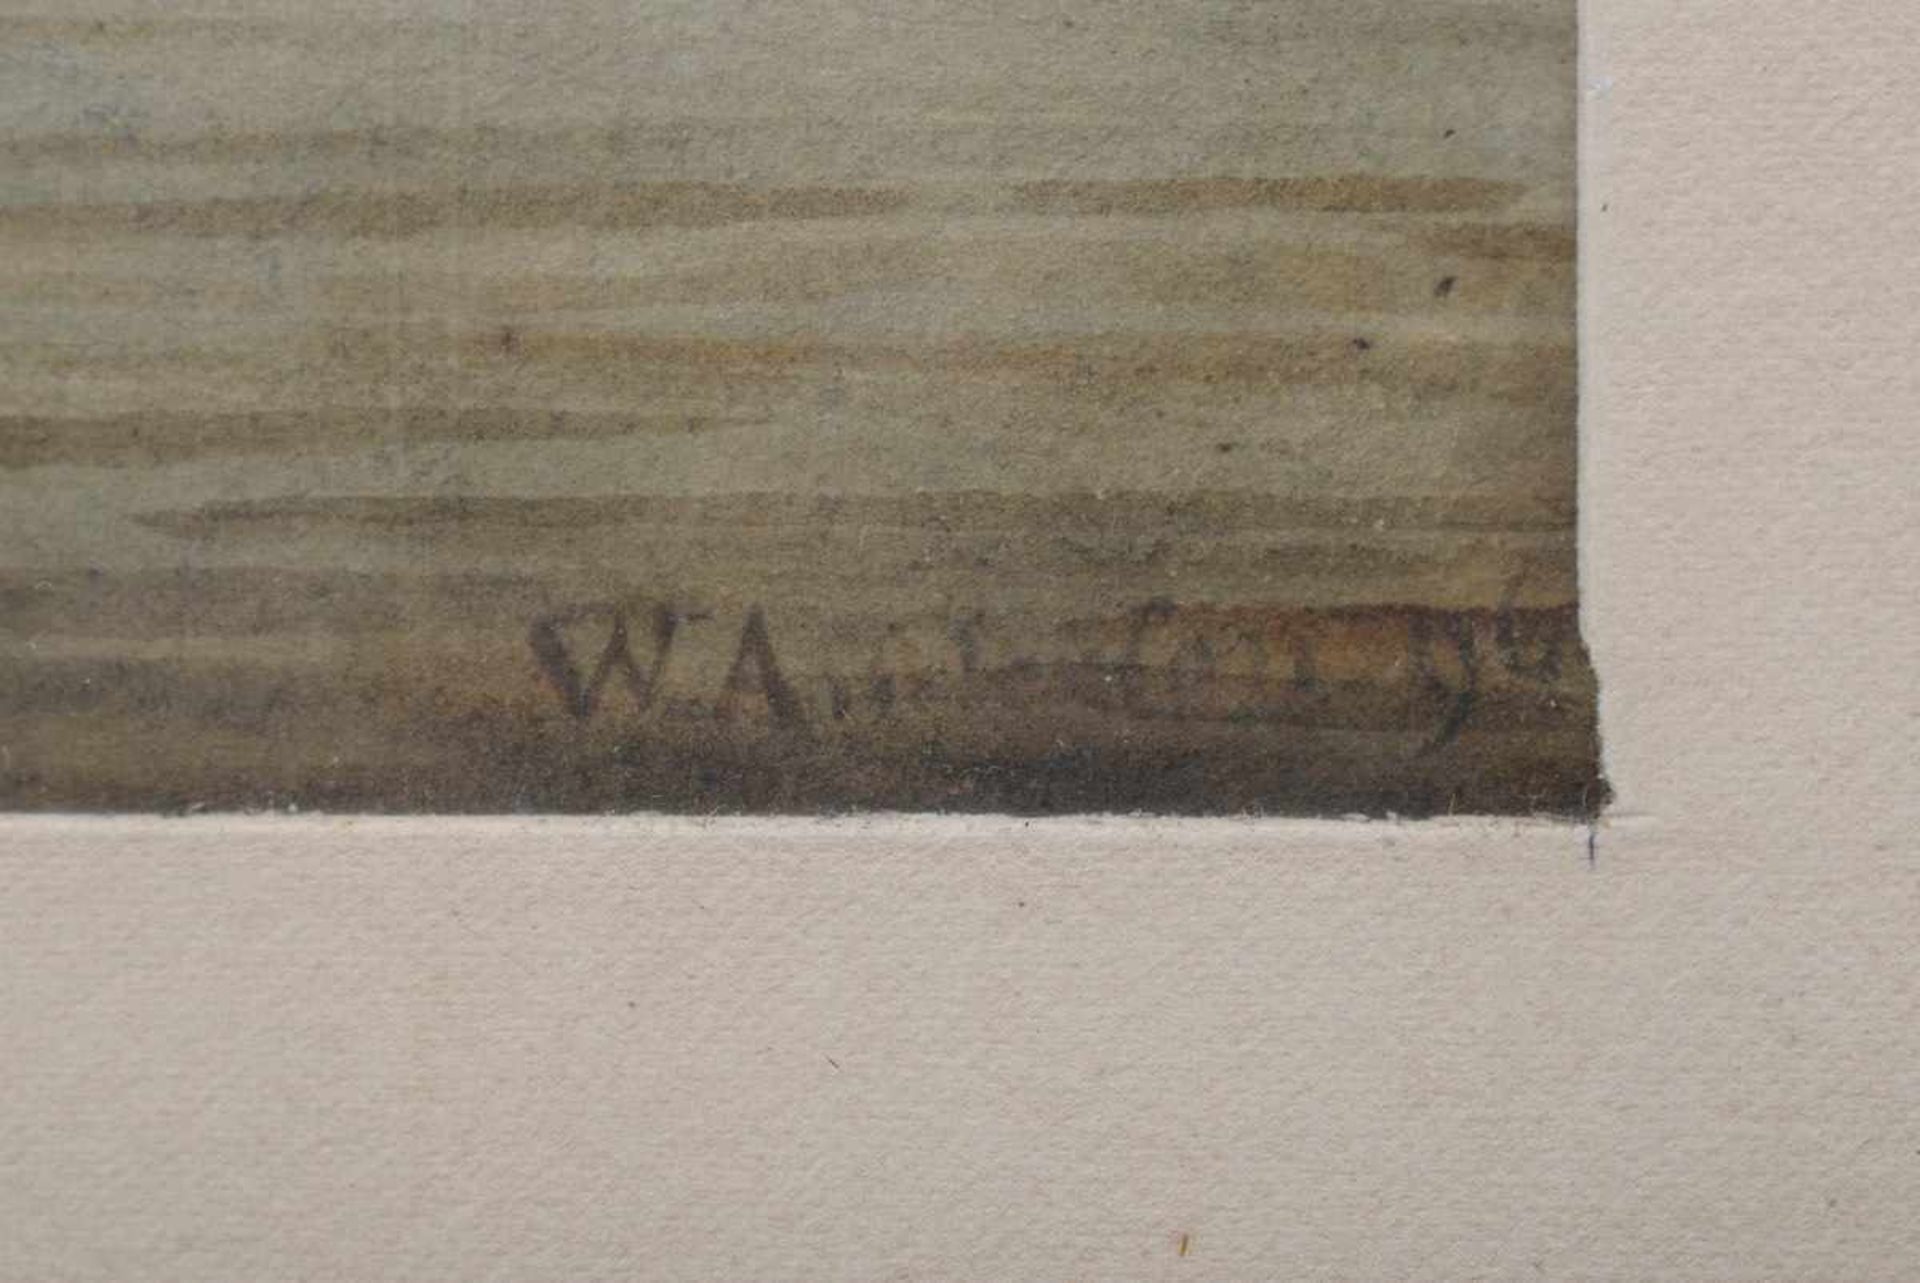 Unbekannter Künstler des 18.Jh. "Schiffe auf Reede", Aquarell, u.r. unleserlich sign. "W.A..." u. - Bild 3 aus 3